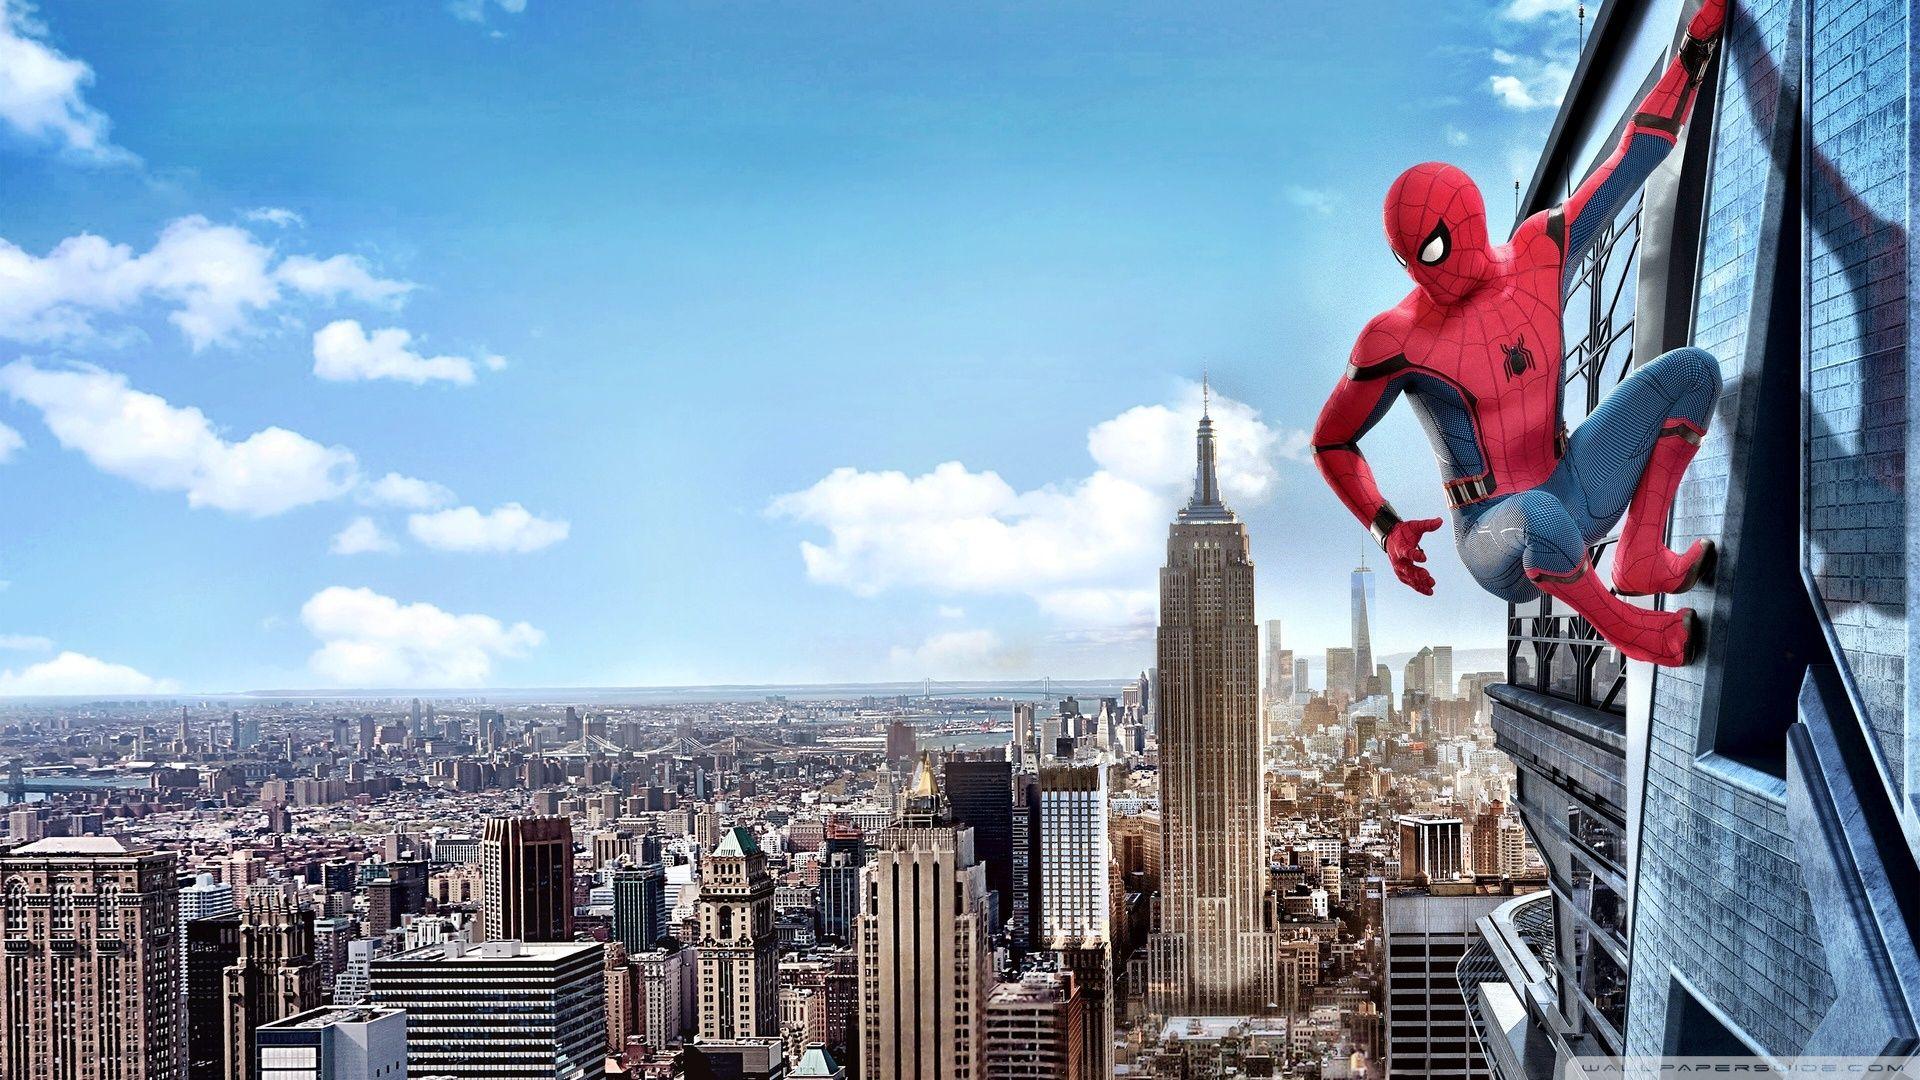 35 Gambar Wallpaper Hd Pc Spiderman terbaru 2020